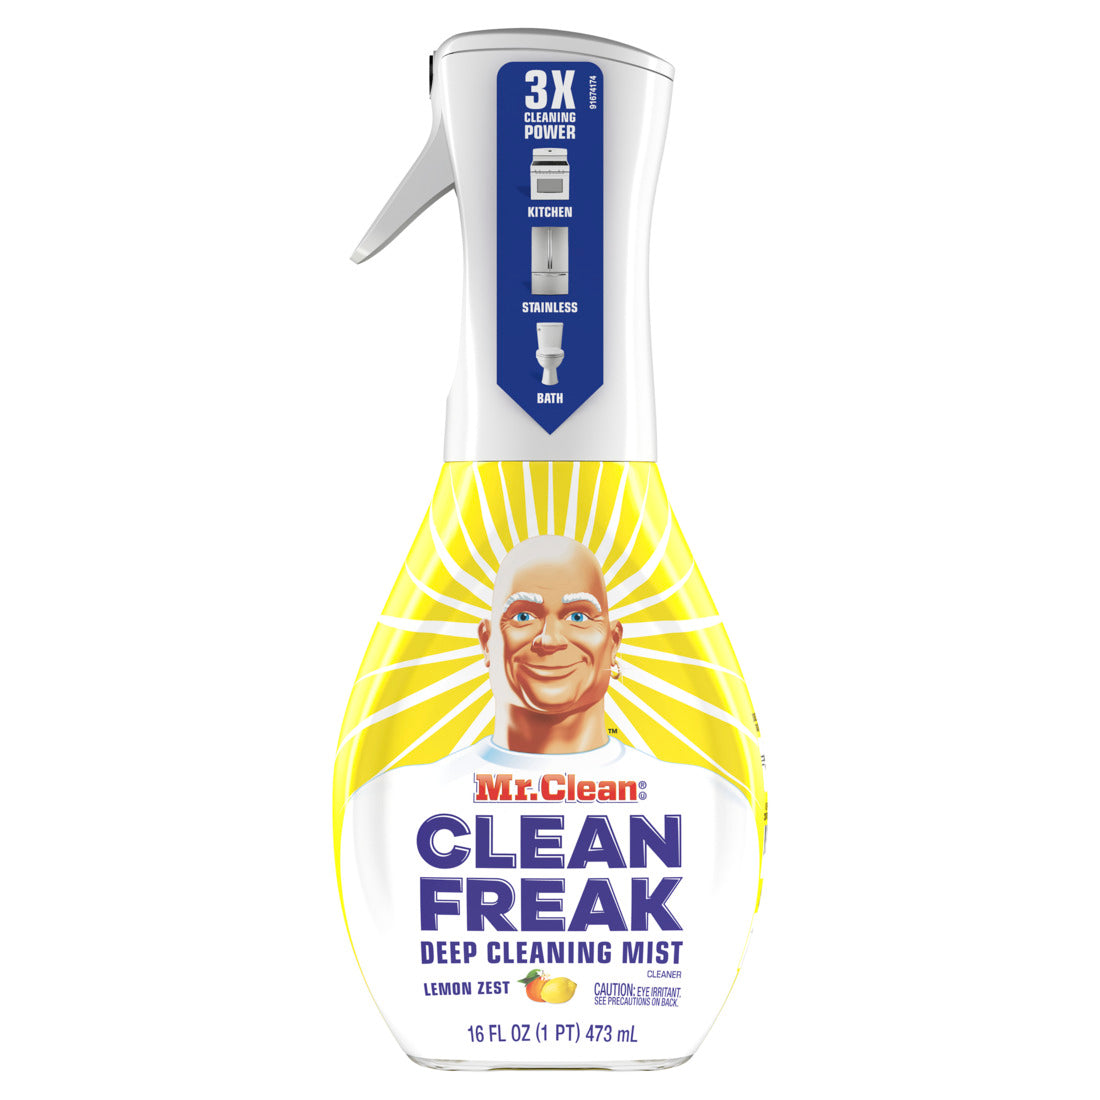 Mr. Clean Clean Freak Mist Multi-Surface Spray Lemon Zest Starter Kit-16oz/6pk